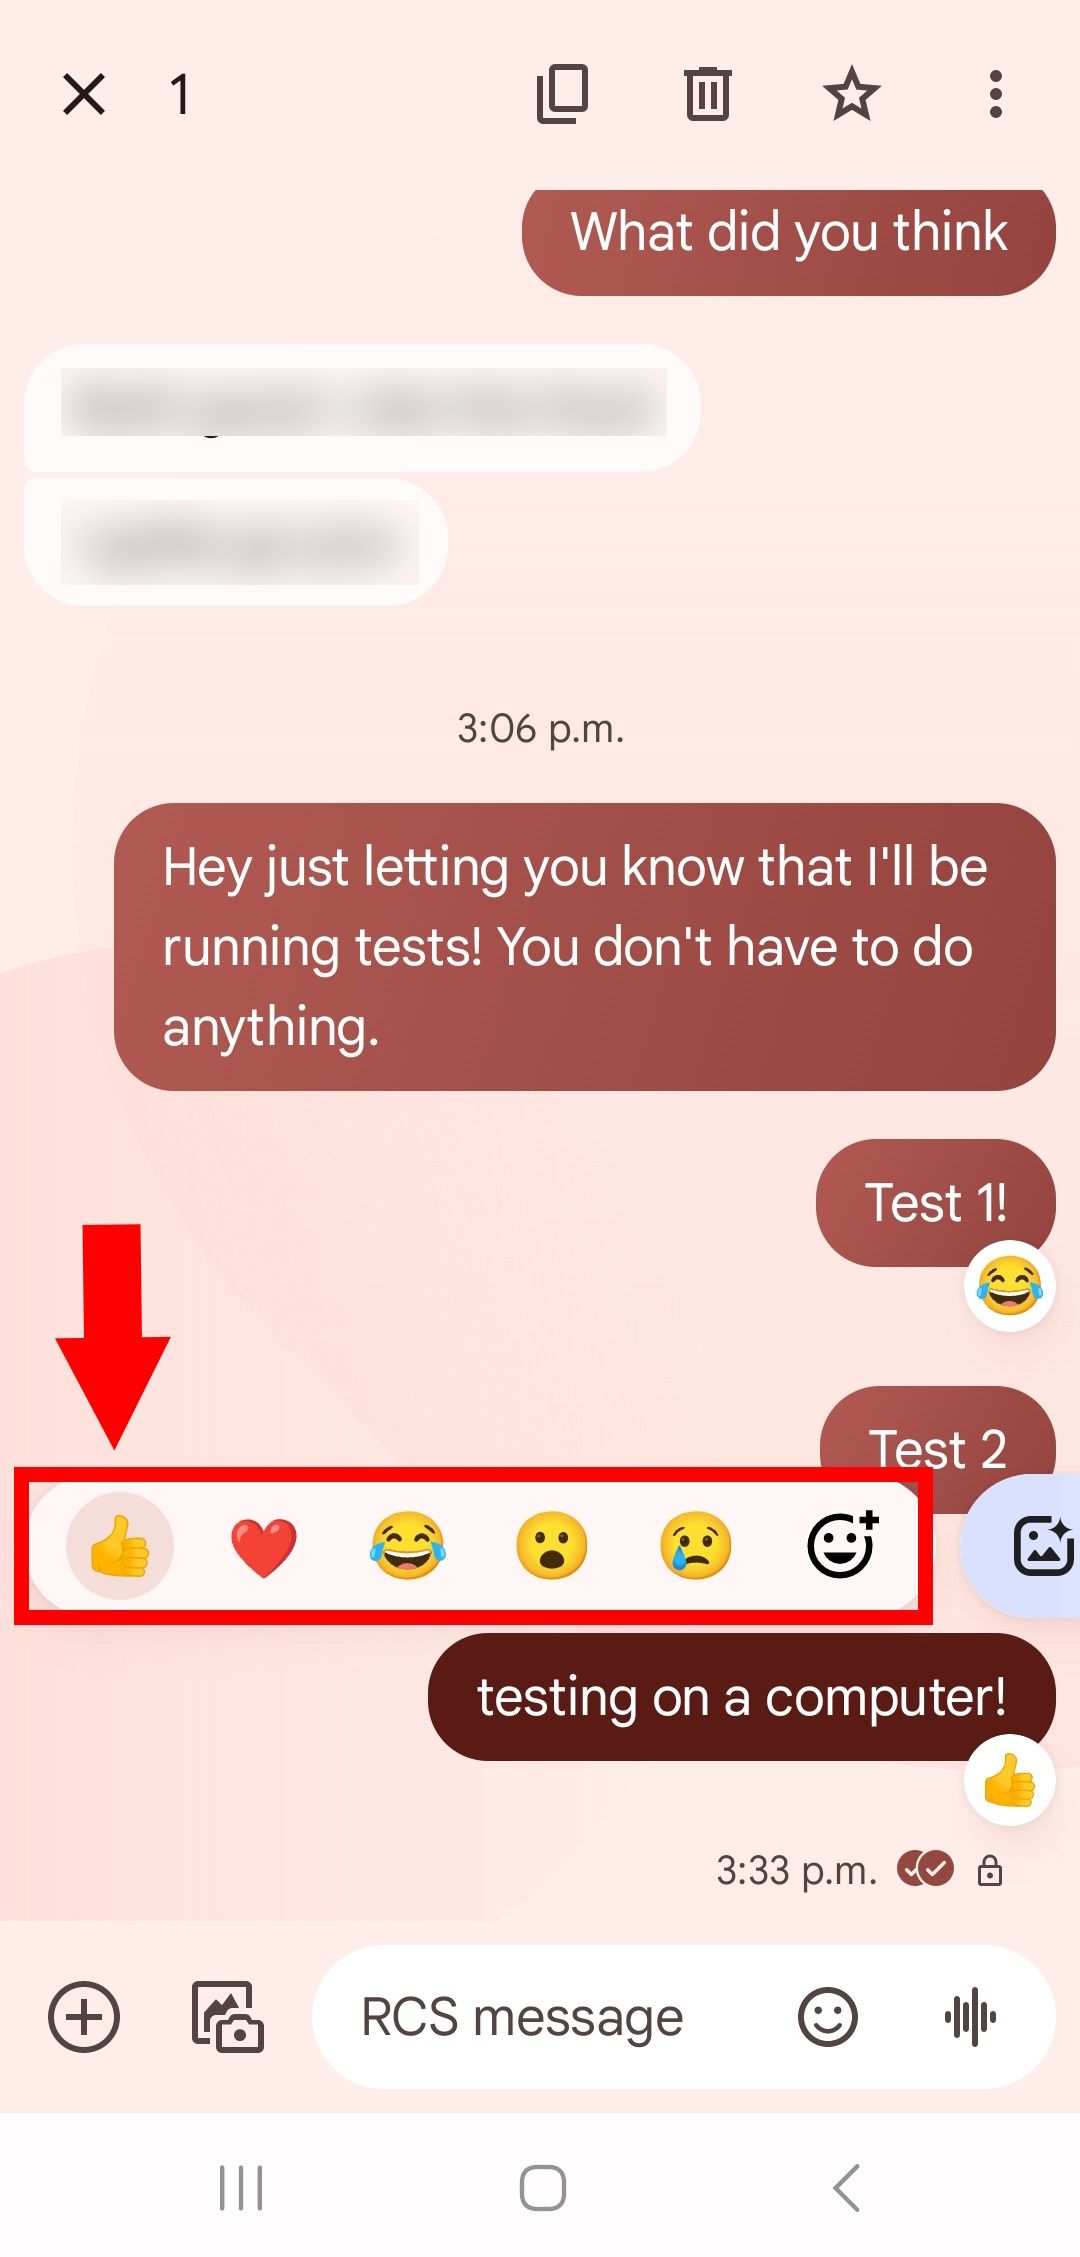 seta sólida vermelha apontando para baixo para emoji de polegar para cima destacado e lista de emoji de reação delineada no aplicativo de mensagens do Google